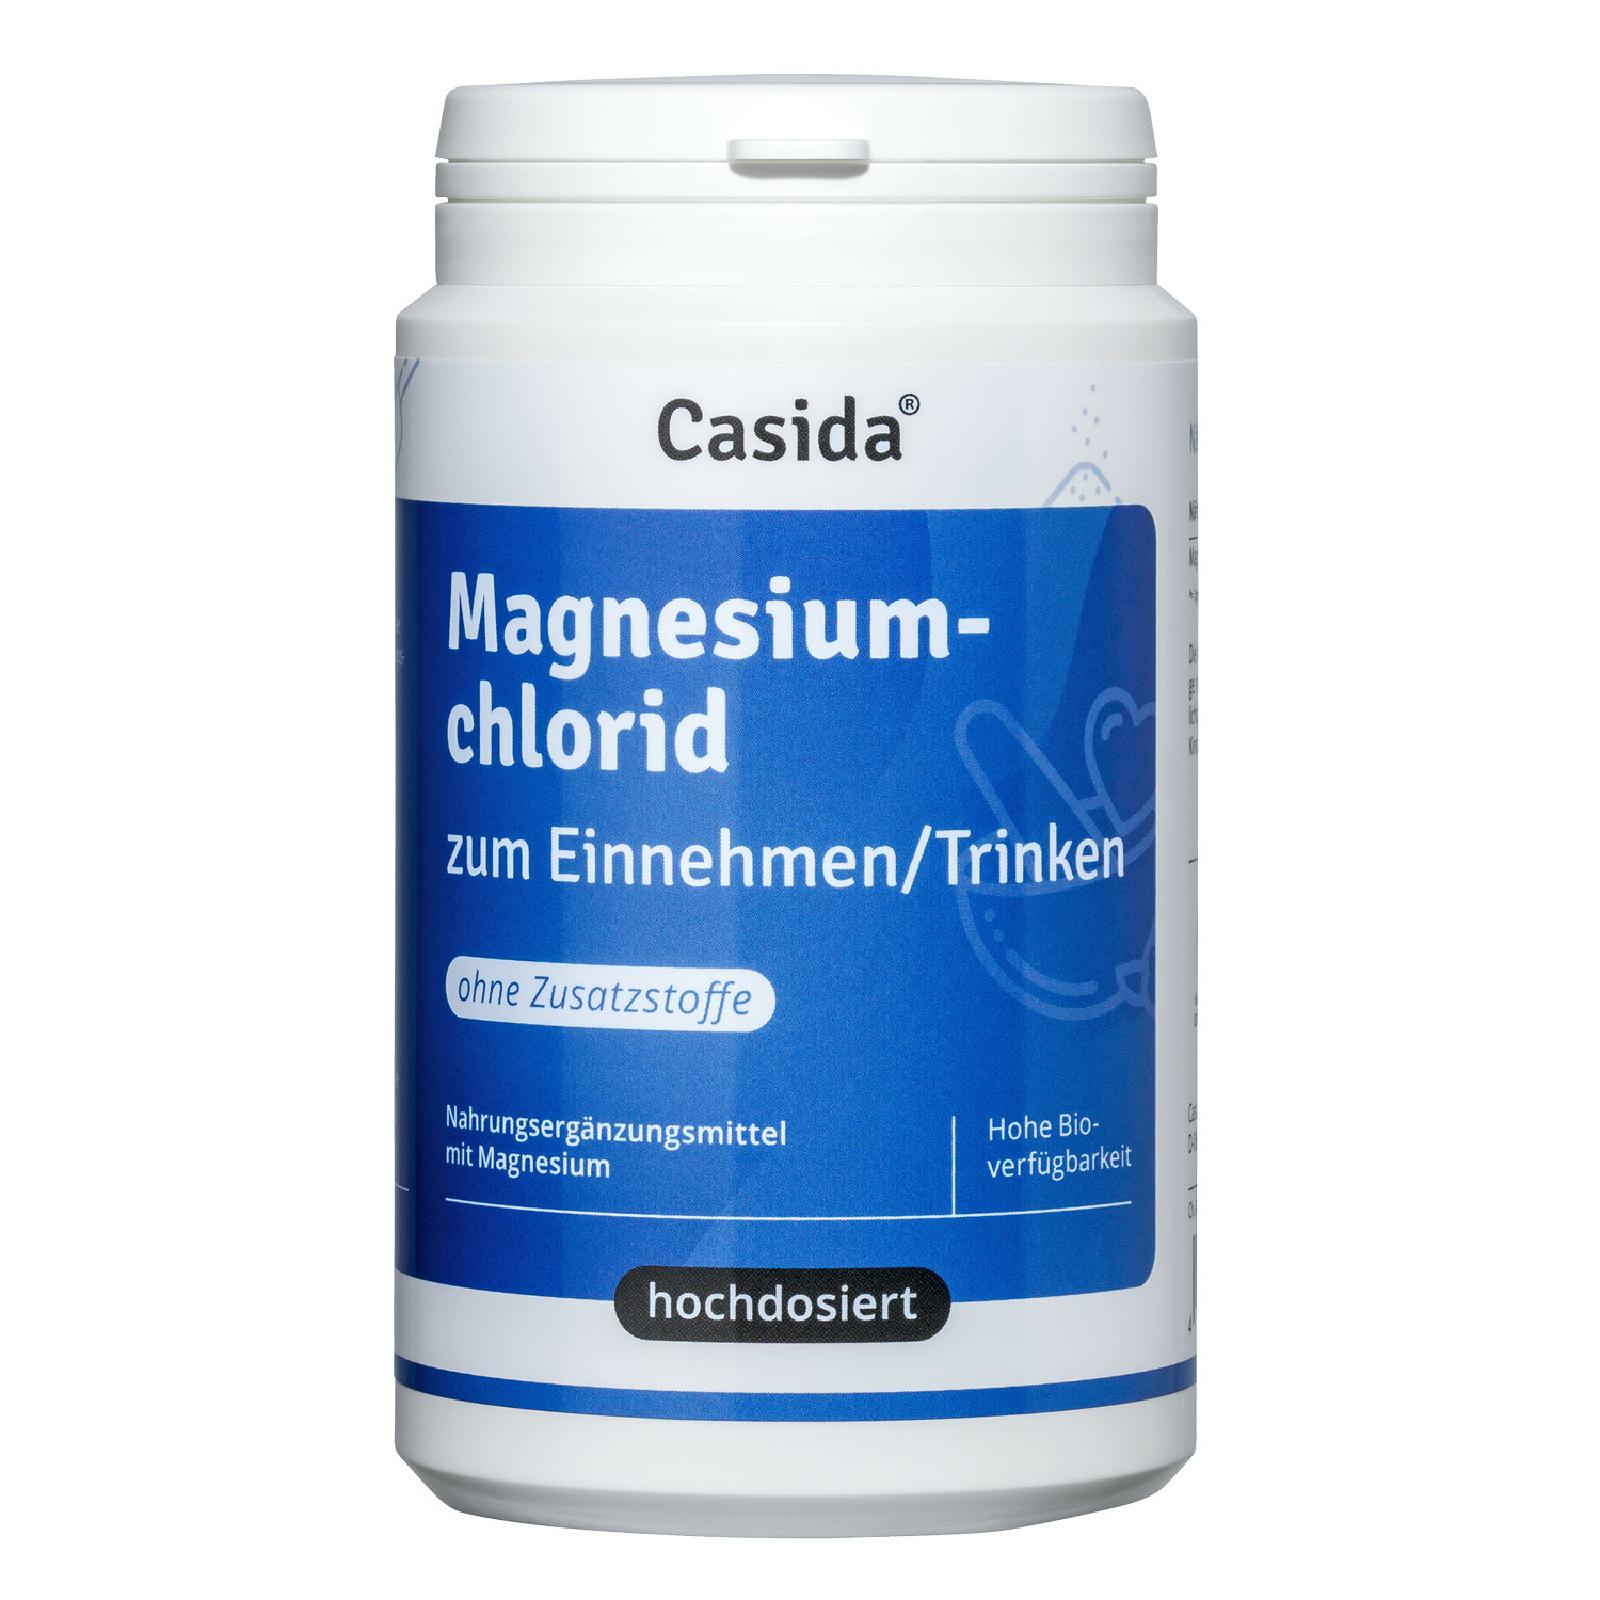 Casida Magnesiumchlorid zum Einnehmen / Trinken